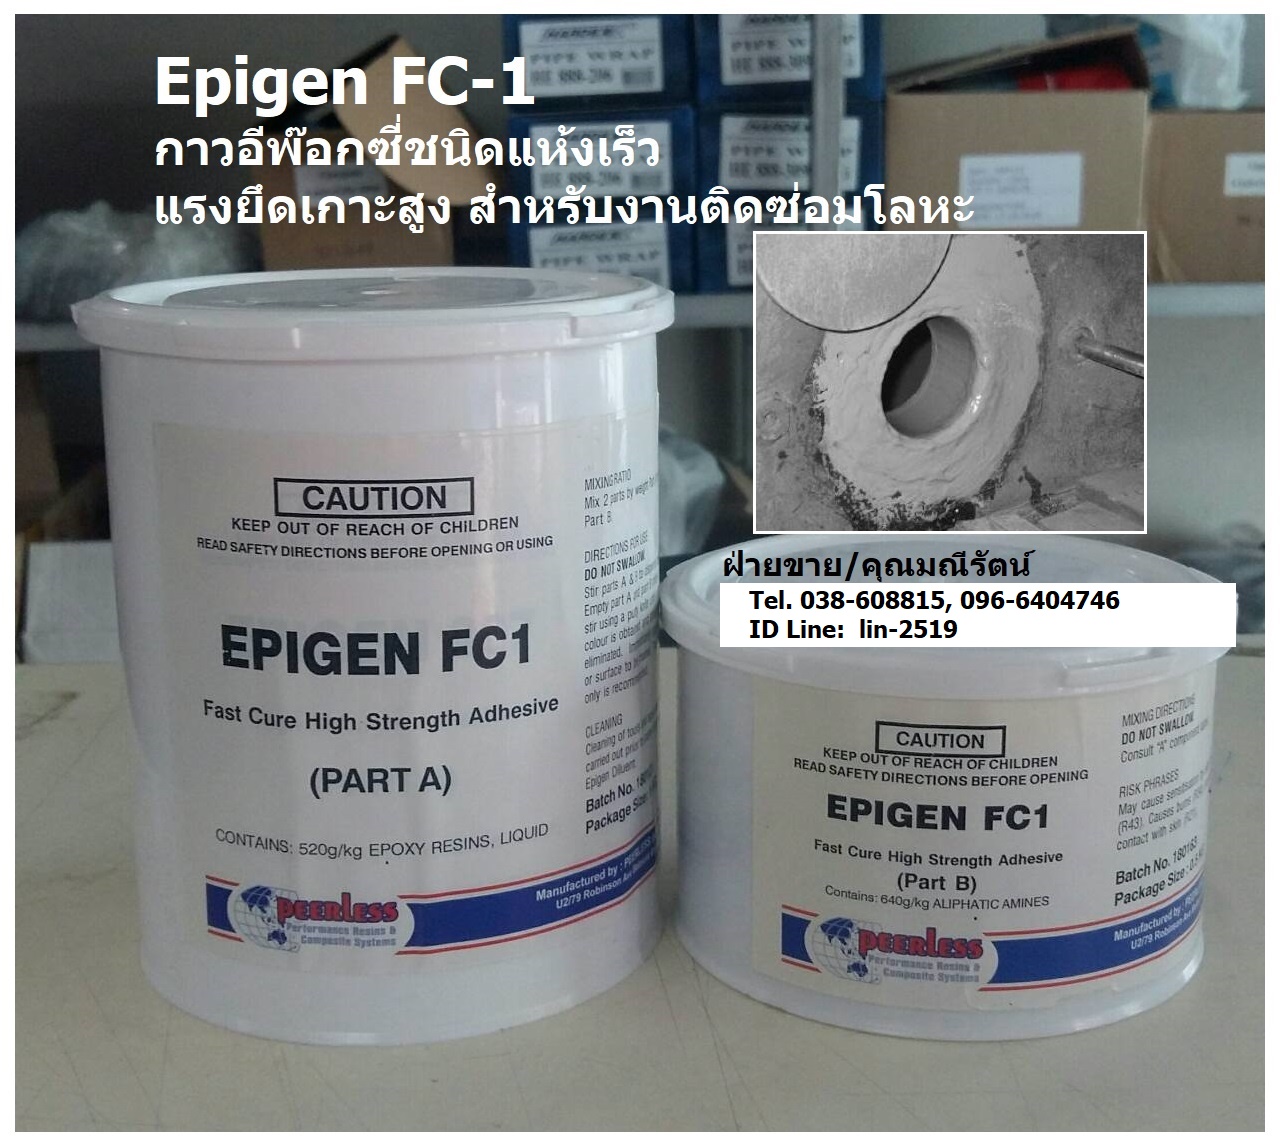 Epigen FC-1 Fast Cure Adhesive & Patch อีพ็อกซี่แห้งเร็ว เหมาะสำหรับใช้เป็นกาวติด, เคลือบหรือเชื่อมซ่อม กรณีฉุกเฉิน แห้งไว สามารถใช้ได้กับหลายพื้นผิว เช่น เหล็ก, สแตนเลส, คอนกรีต, ไม้ และ ไฟเบอร์กลาส มีความแข็งแรง รูปที่ 1